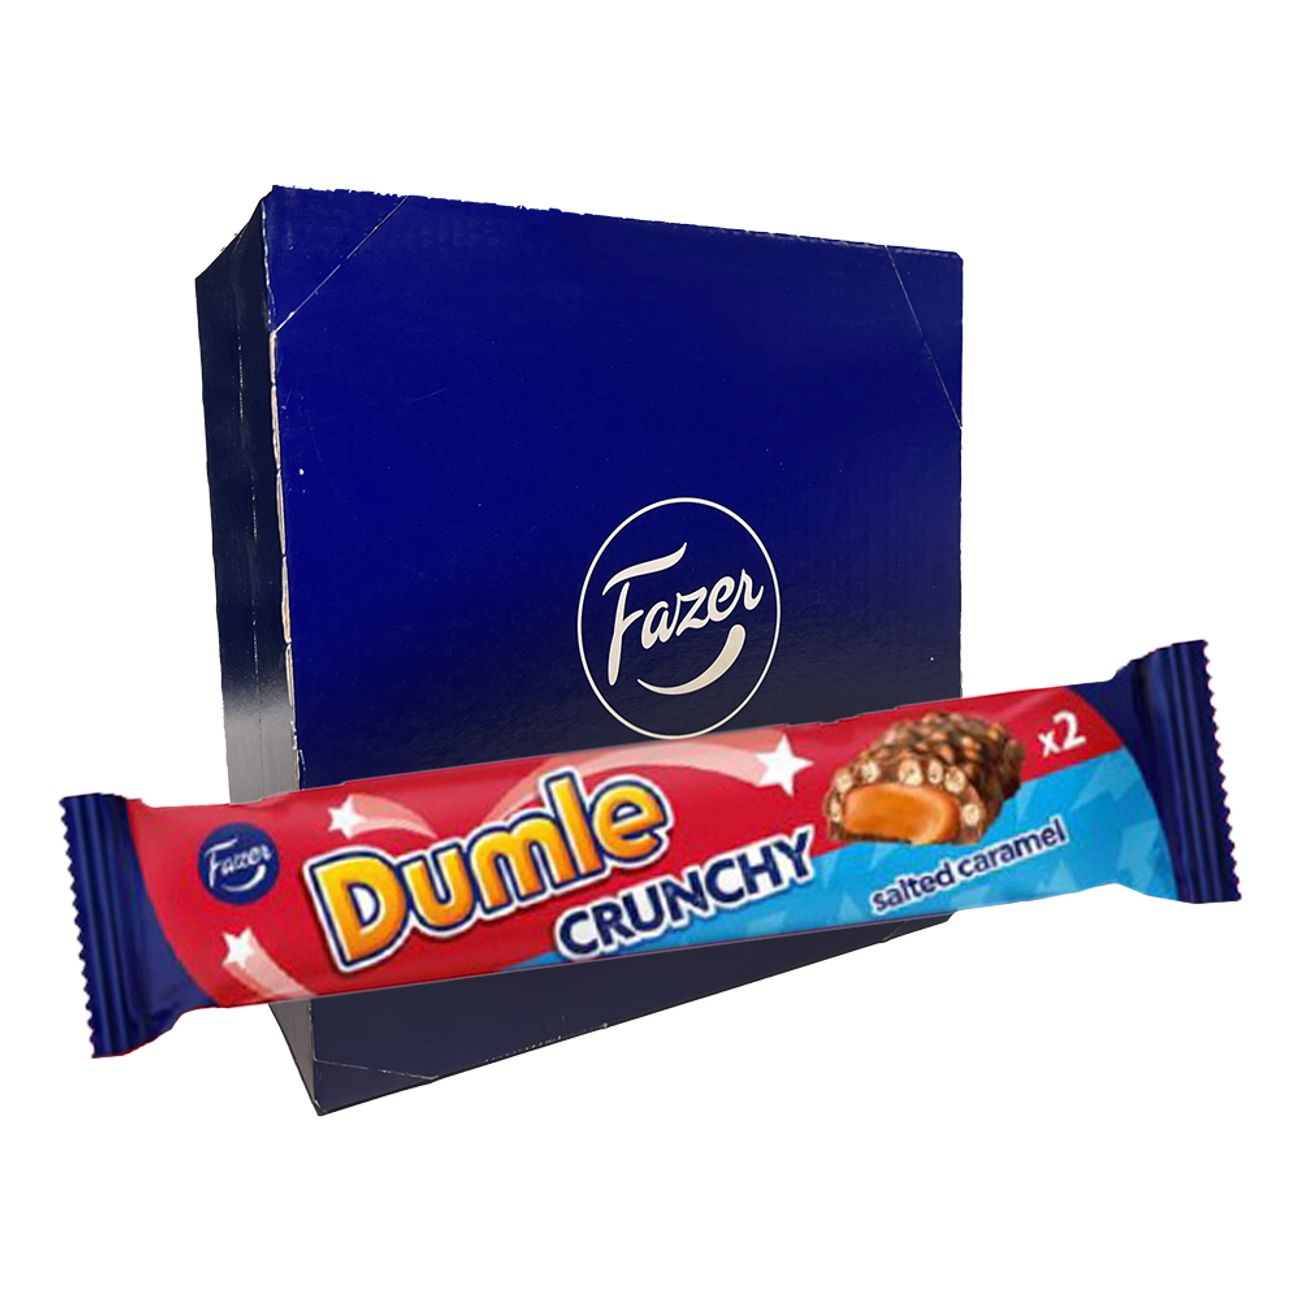 dumle-crunchy-salted-caramel-dubbel-storpack-102957-1